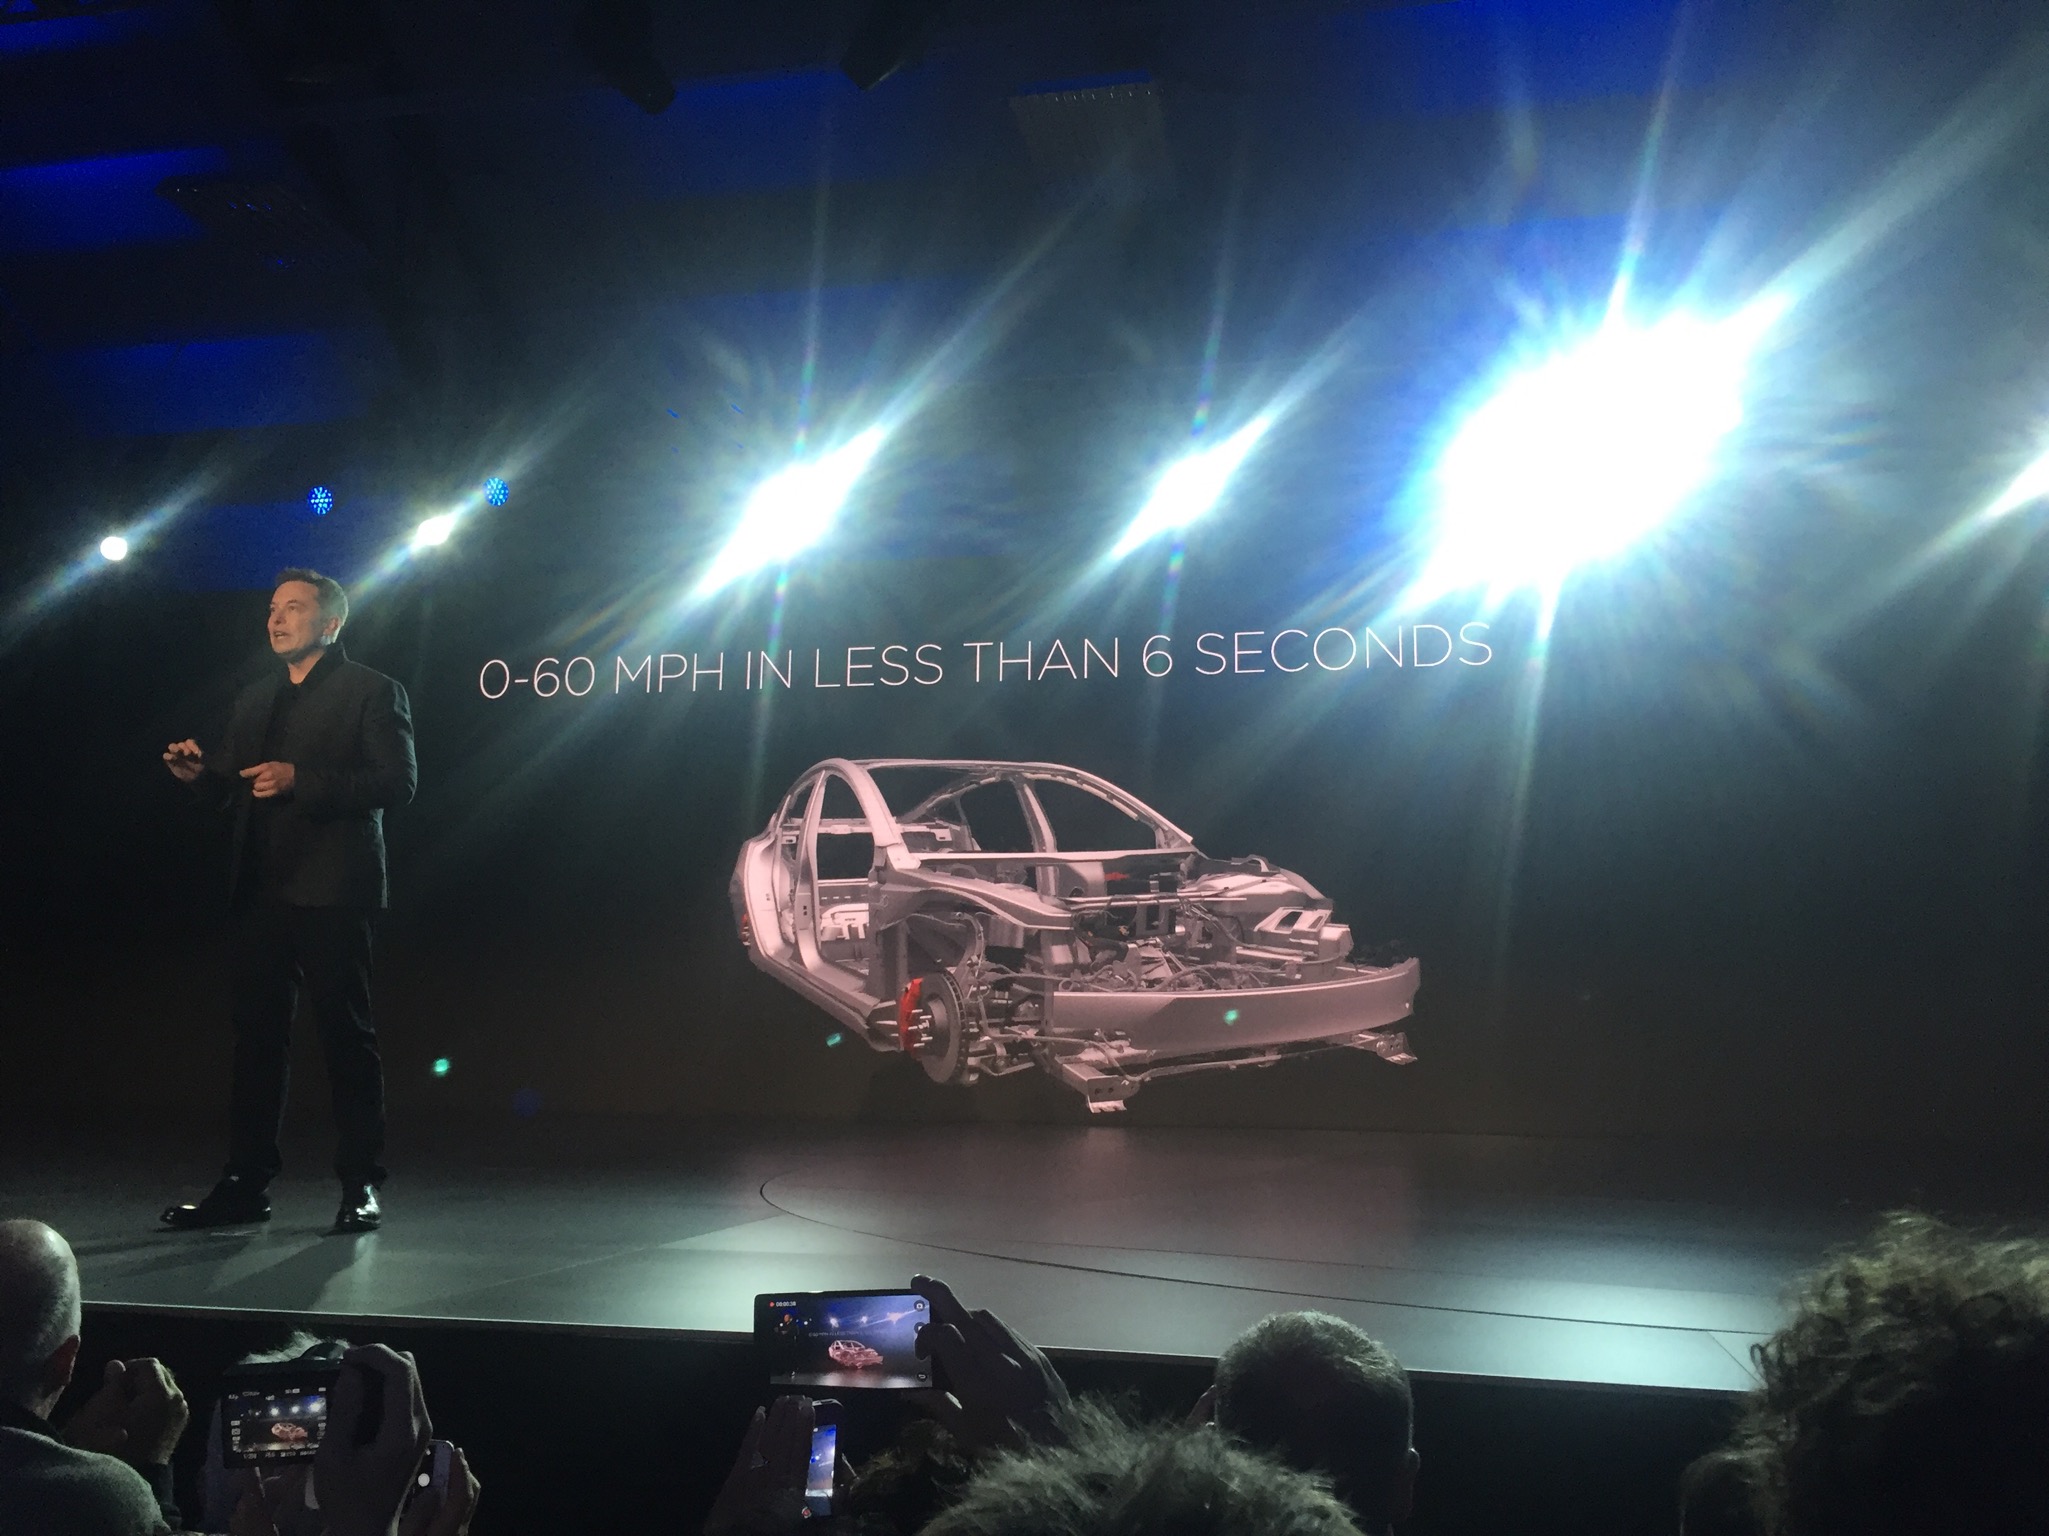 Elon Musk präsentiert die Fakten: 5 Sterne Sicherheit in allen Kategorieren, 345km Reichweite, 0-100 km/h in 6 Sekunden. Laden beim Tesla Supercharger und Fahren mit Autopilot sind ebenfalls möglich.